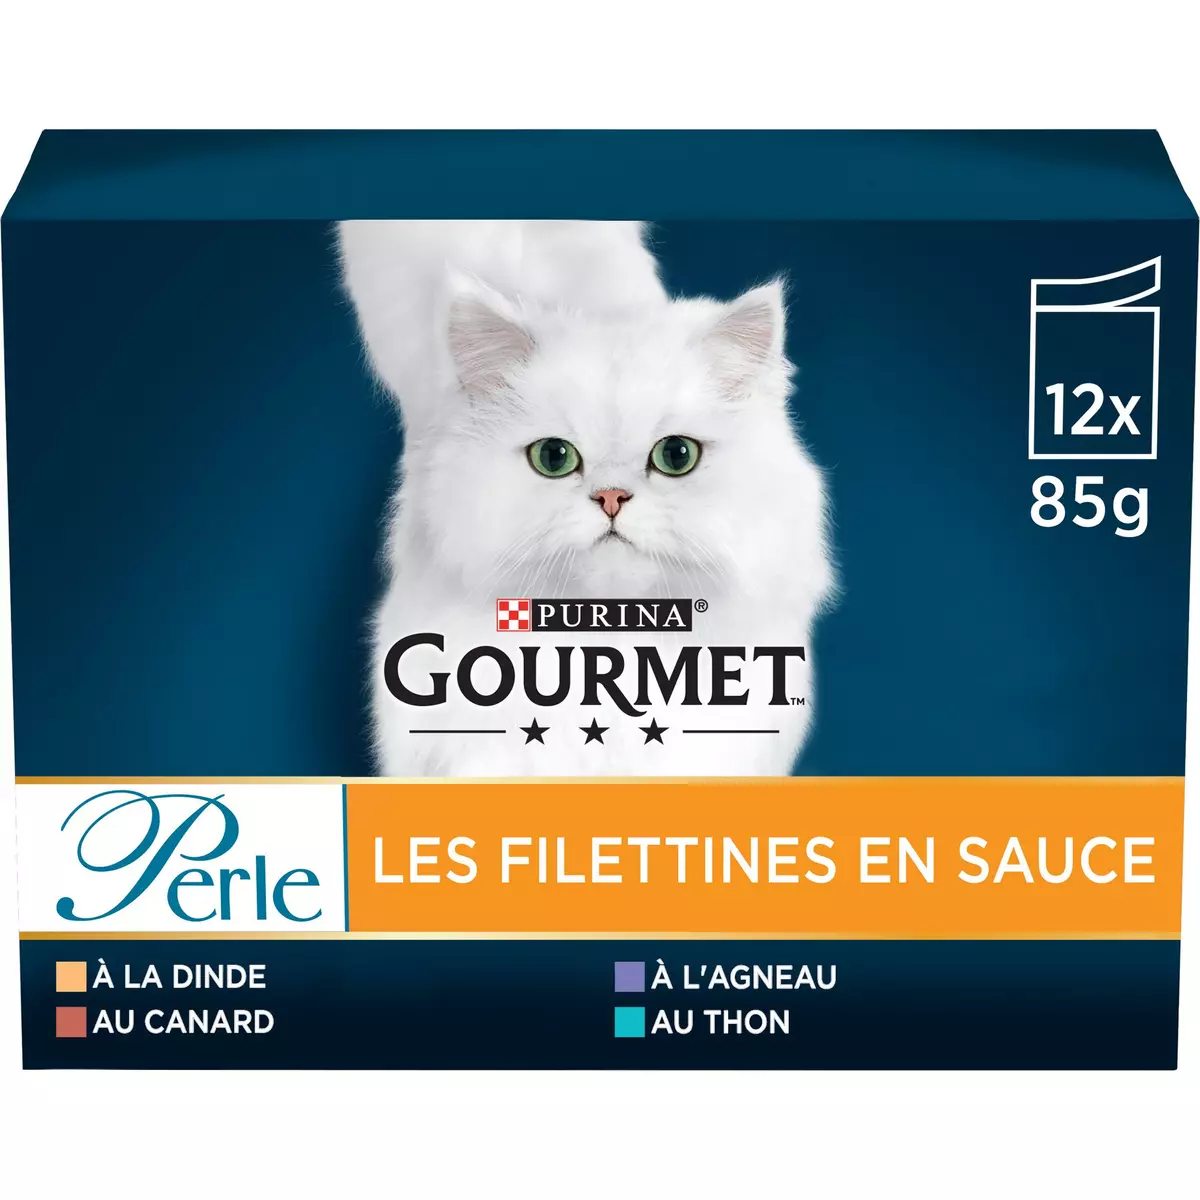 GOURMET Perle Les Filettines en sauce sachets repas pâtée en sauce viandes et poissons pour chat 12x85g